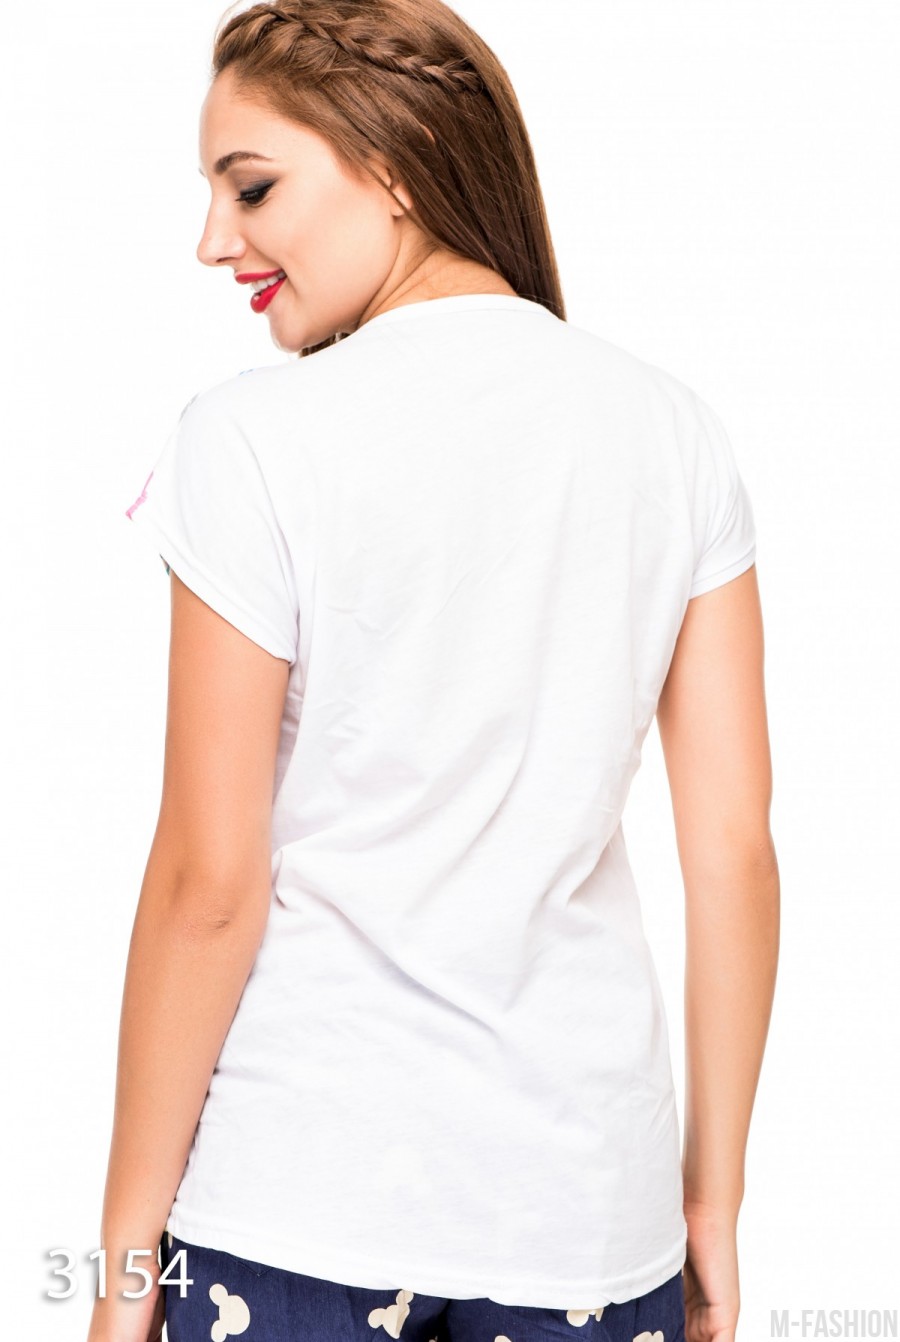 Летняя футболка с цветными полосами впереди и белой однотонной спинкой- Фото 3